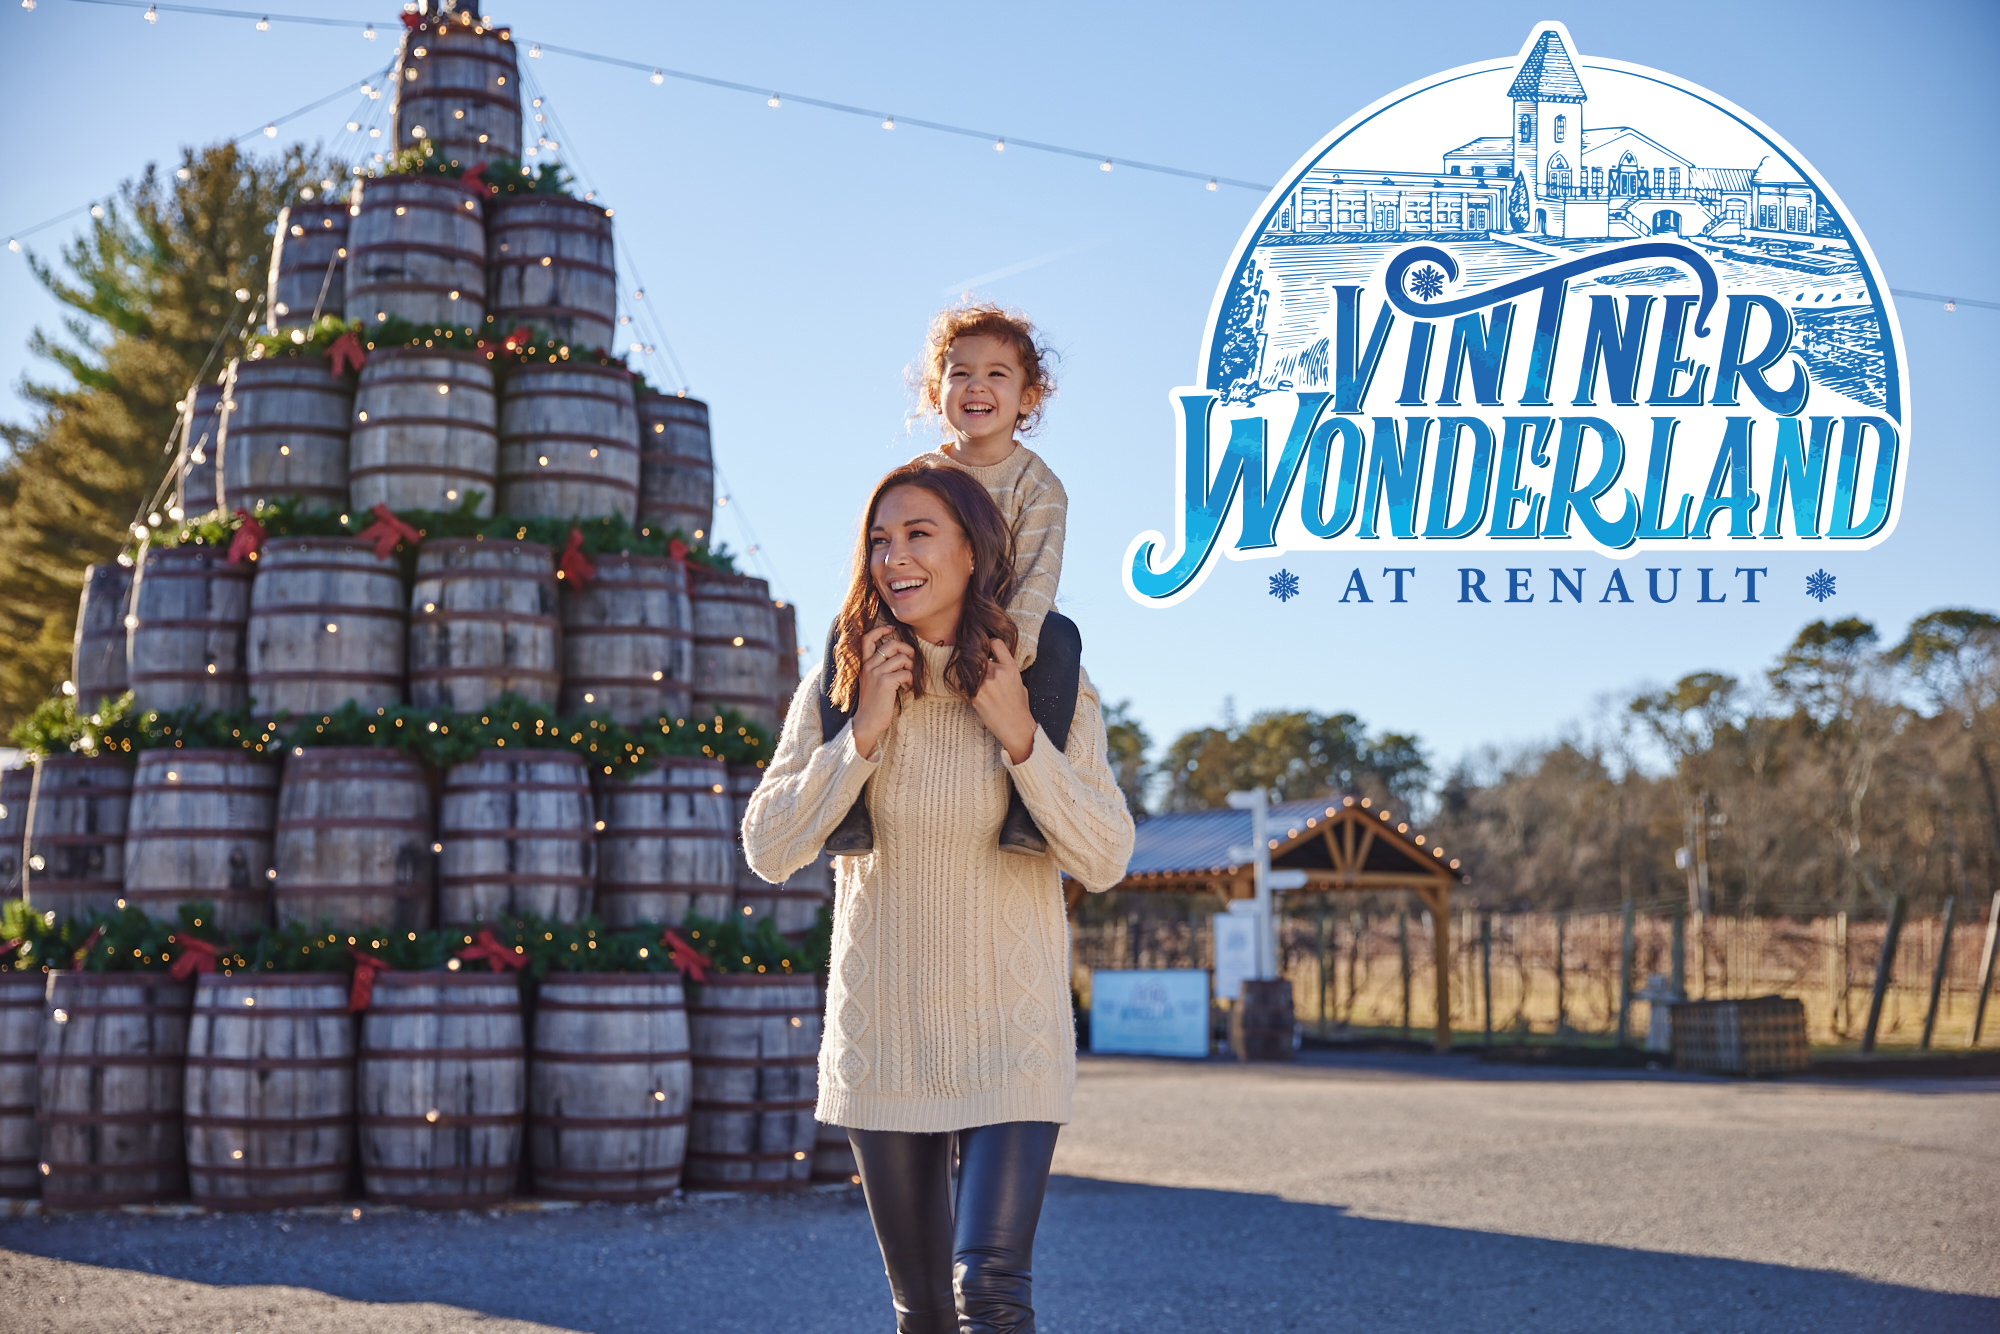 Vintner Wonderland - South Jersey Events |Renault Winery Resort